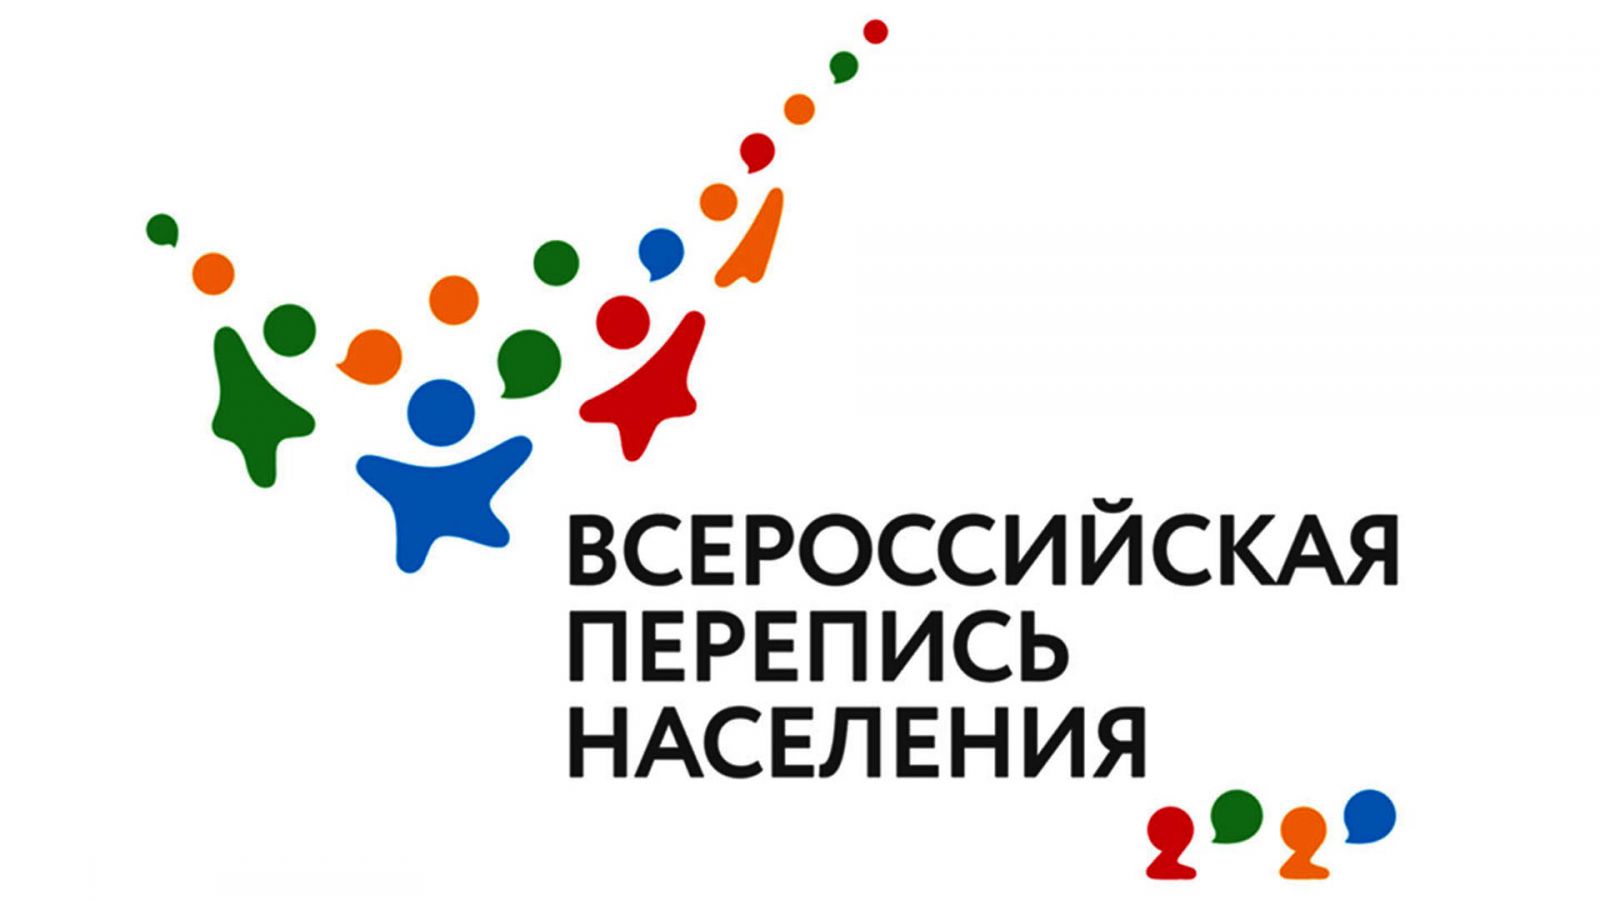 15 октября начнется первая цифровая Всероссийская перепись населения, которая станет своеобразным селфи всей страны.